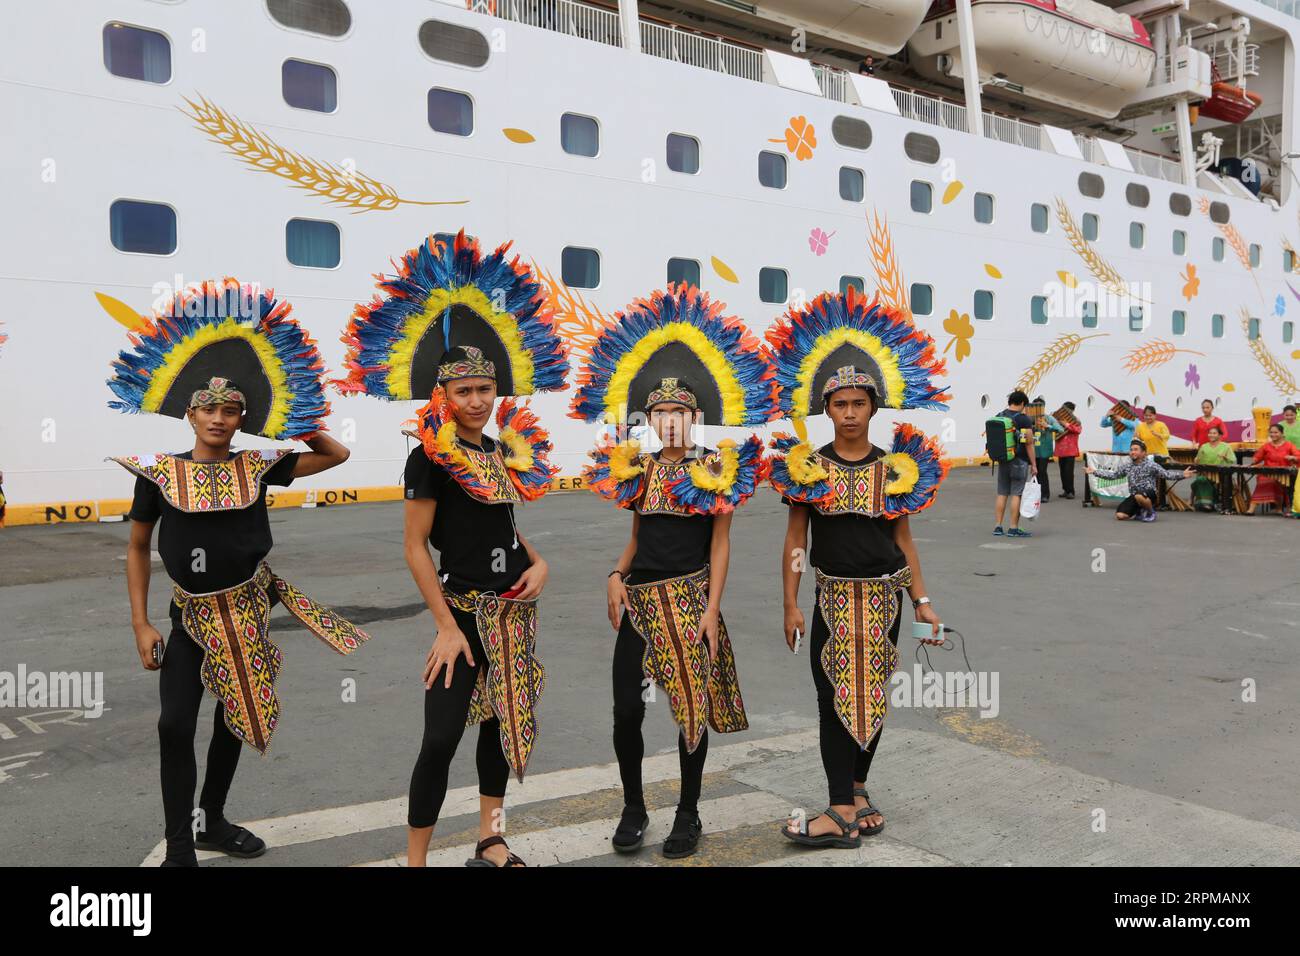 Fête de bienvenue sur le thème de la fête philippine pour bateau de croisière à Manille Pier : musiciens avec des instruments en bambou, danseurs philippins, higantes, drapeaux Banque D'Images